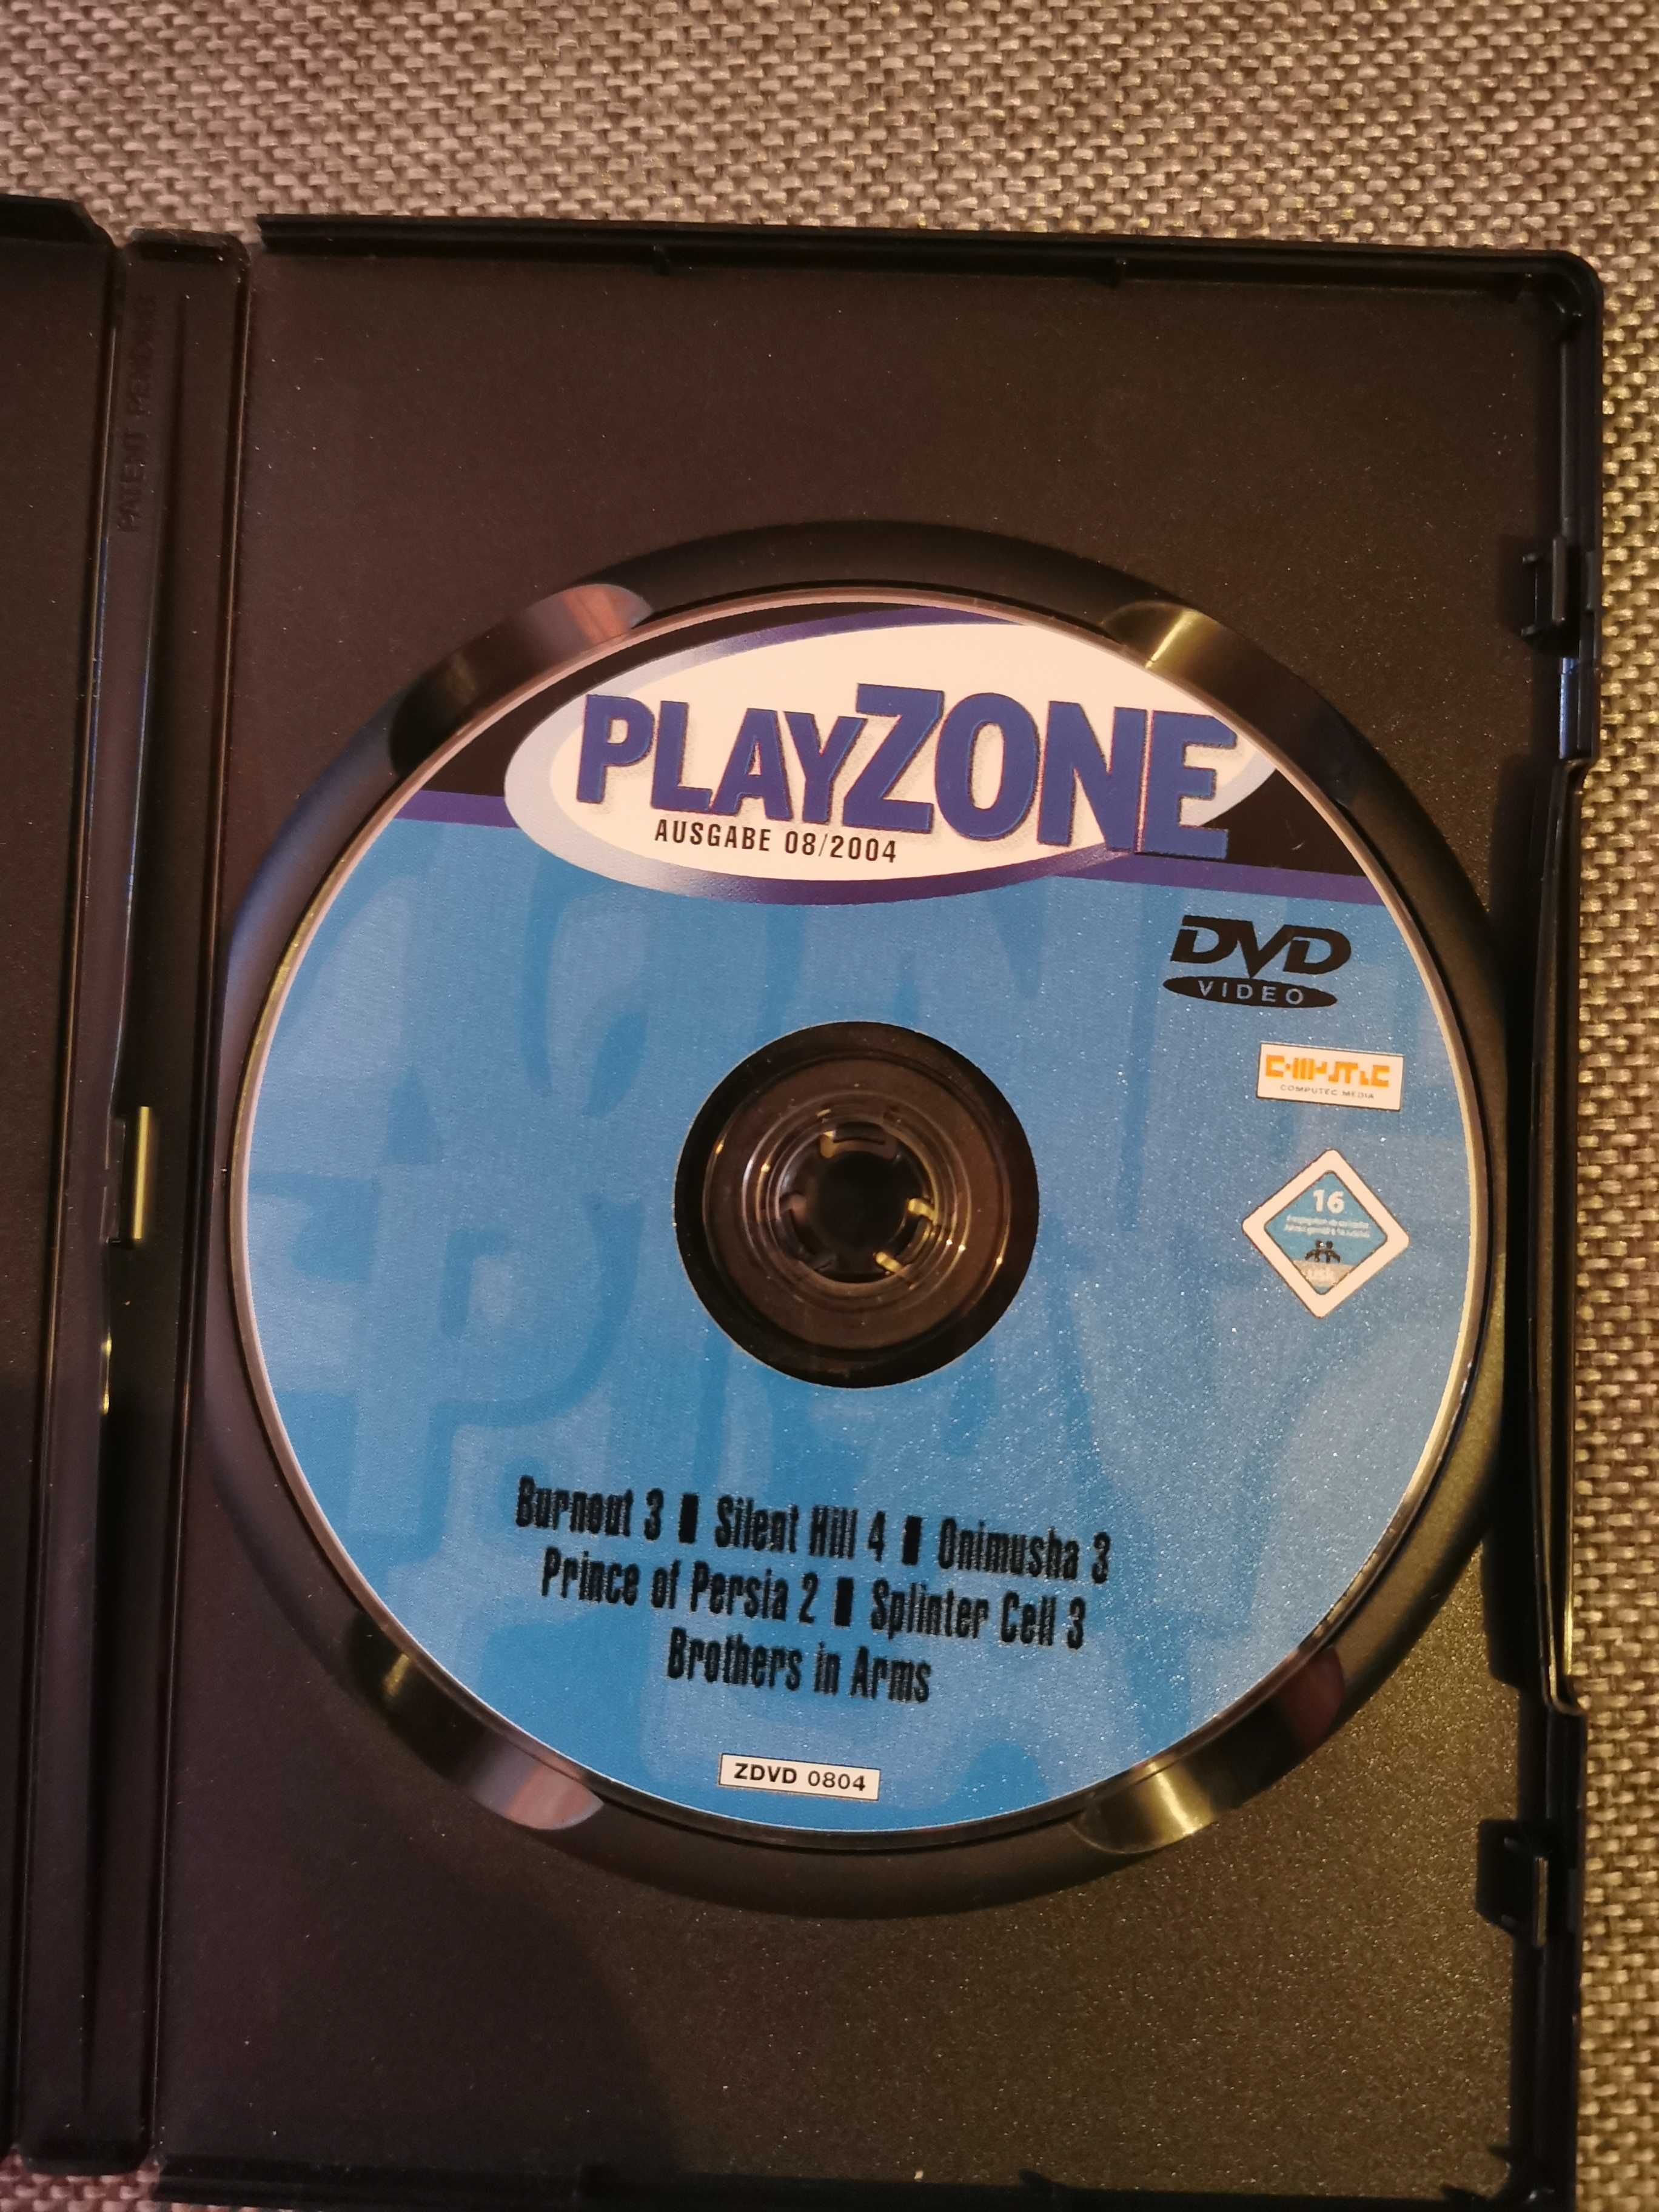 Playzone DVD 08/2004 Trailer / Tests Burnout 3, Silent Hill 4 u.v.m.